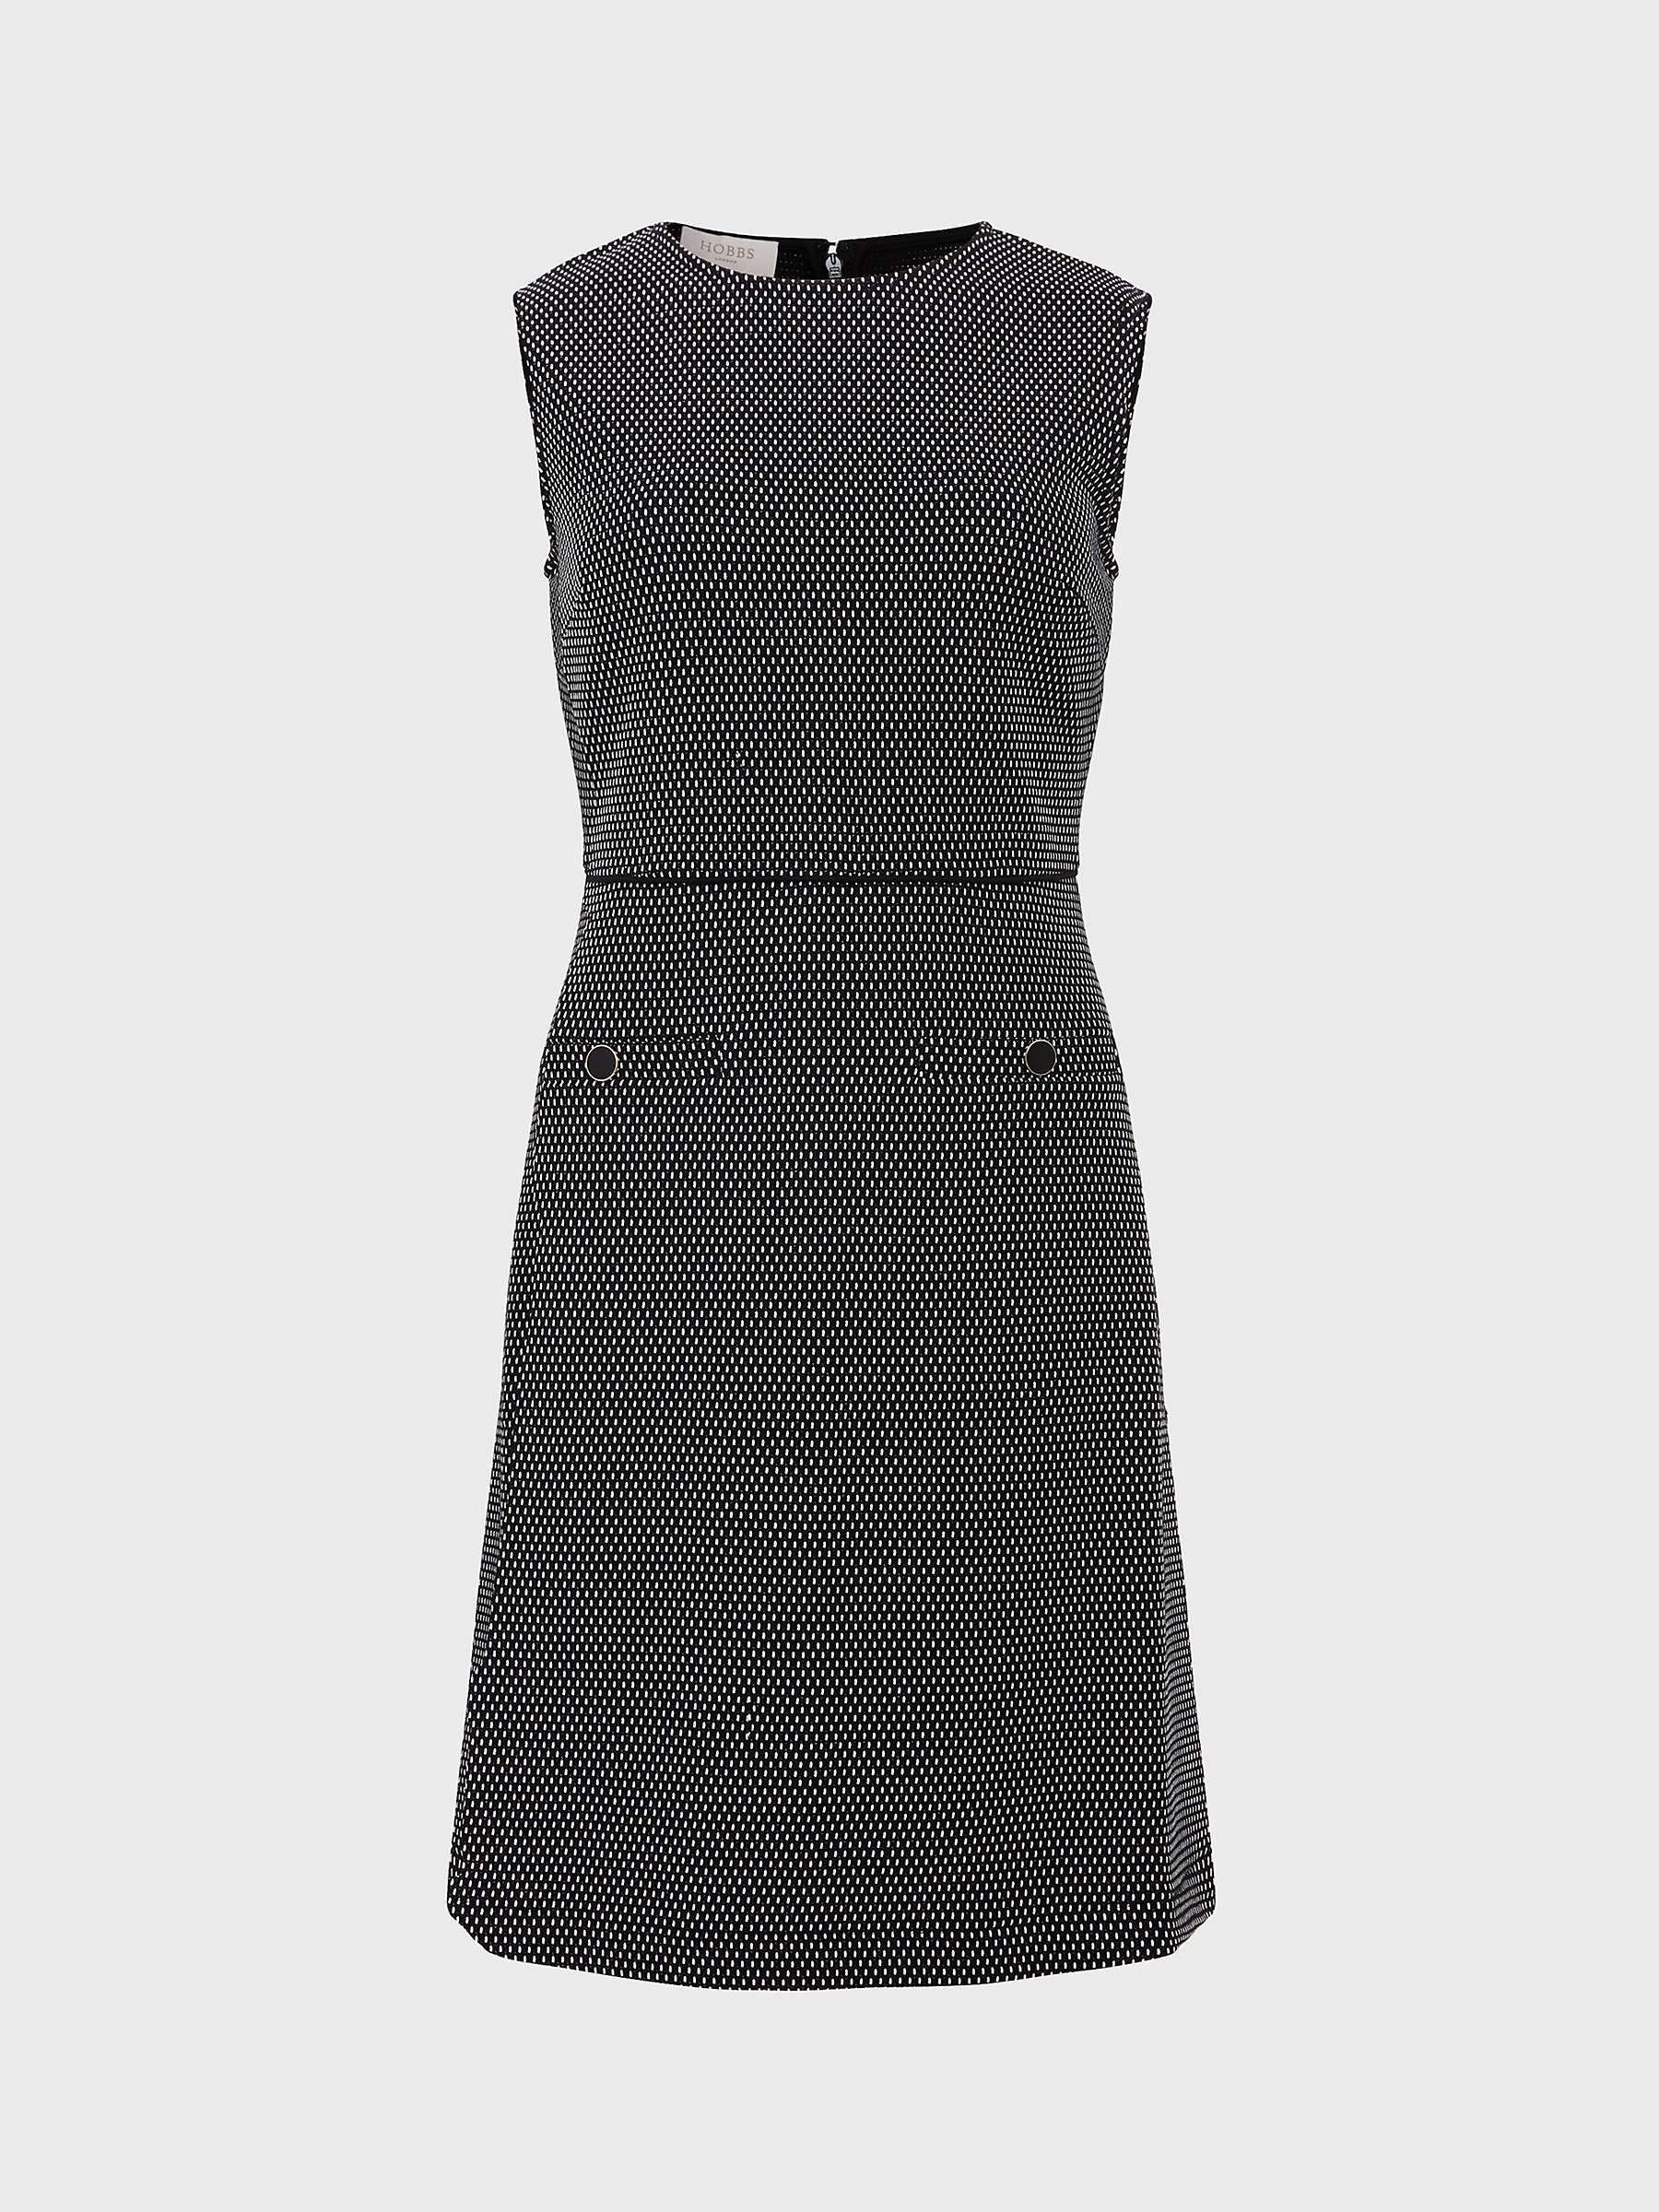 Buy Hobbs Violet Ponte Dress, Black/Ivory Online at johnlewis.com